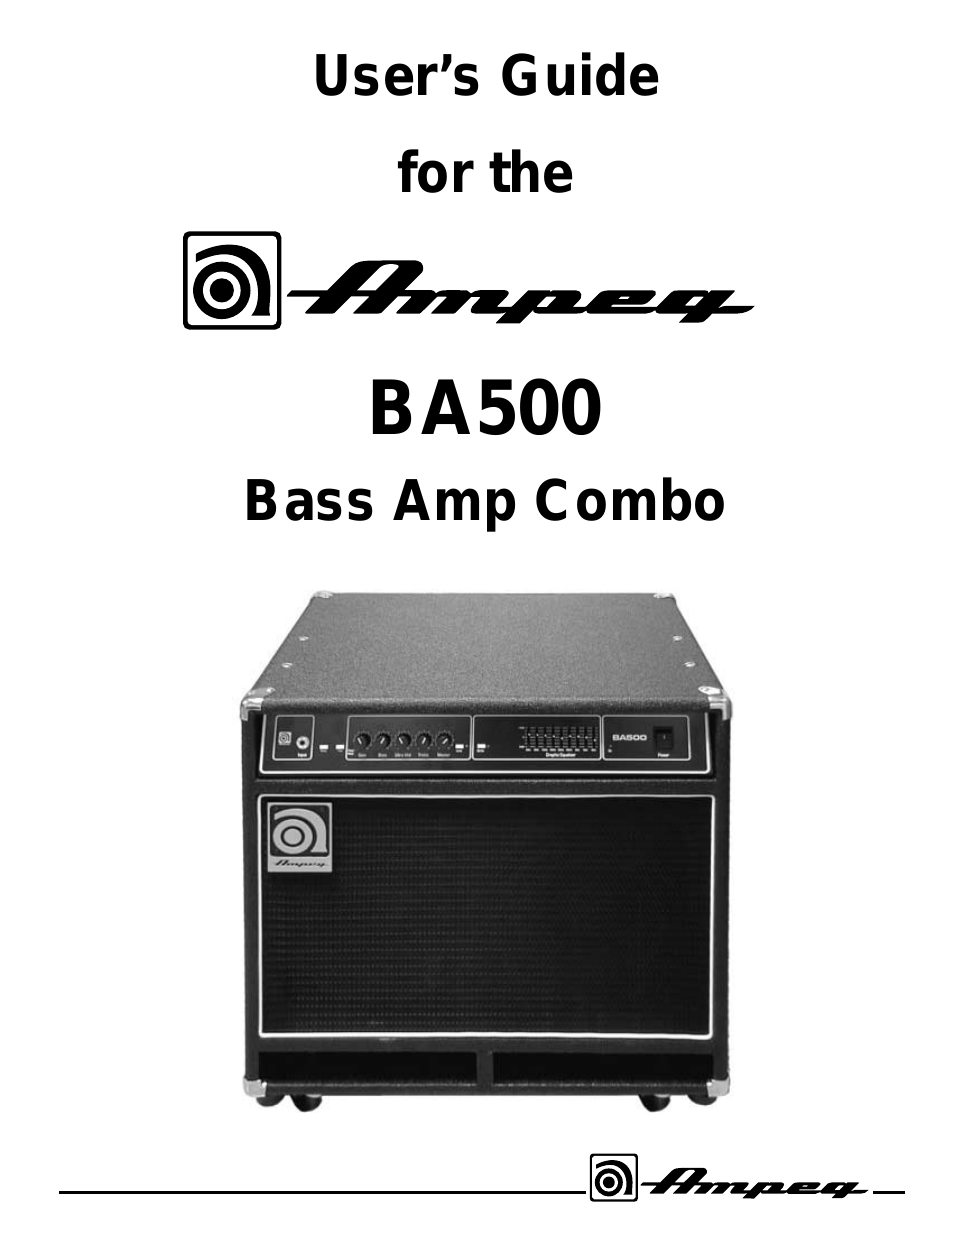 BASS AMP COMBO BA500